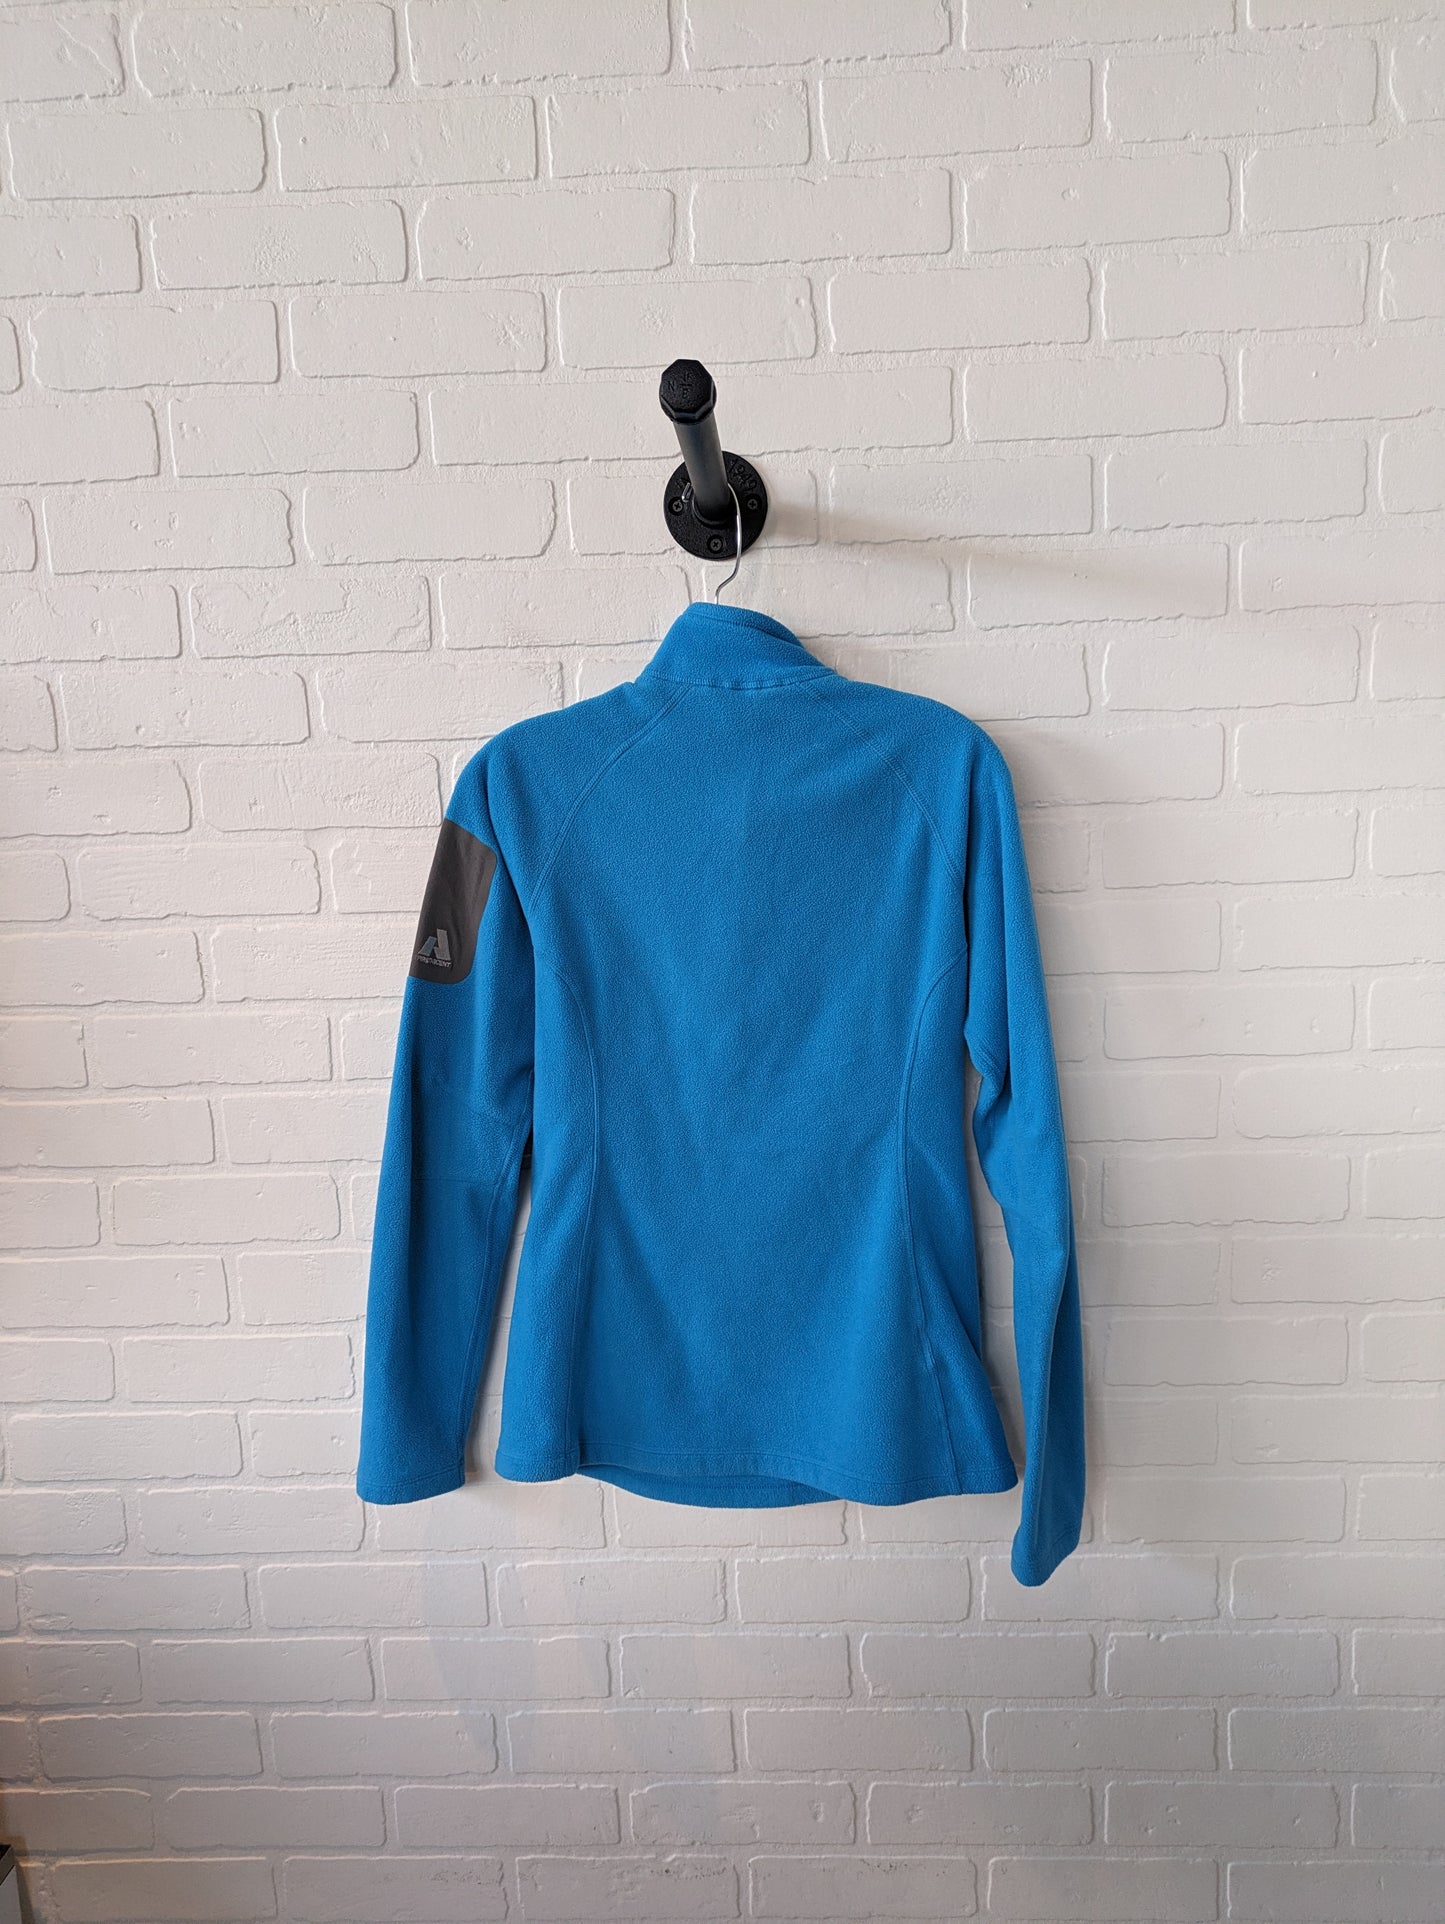 Jacket Fleece By Eddie Bauer  Size: S